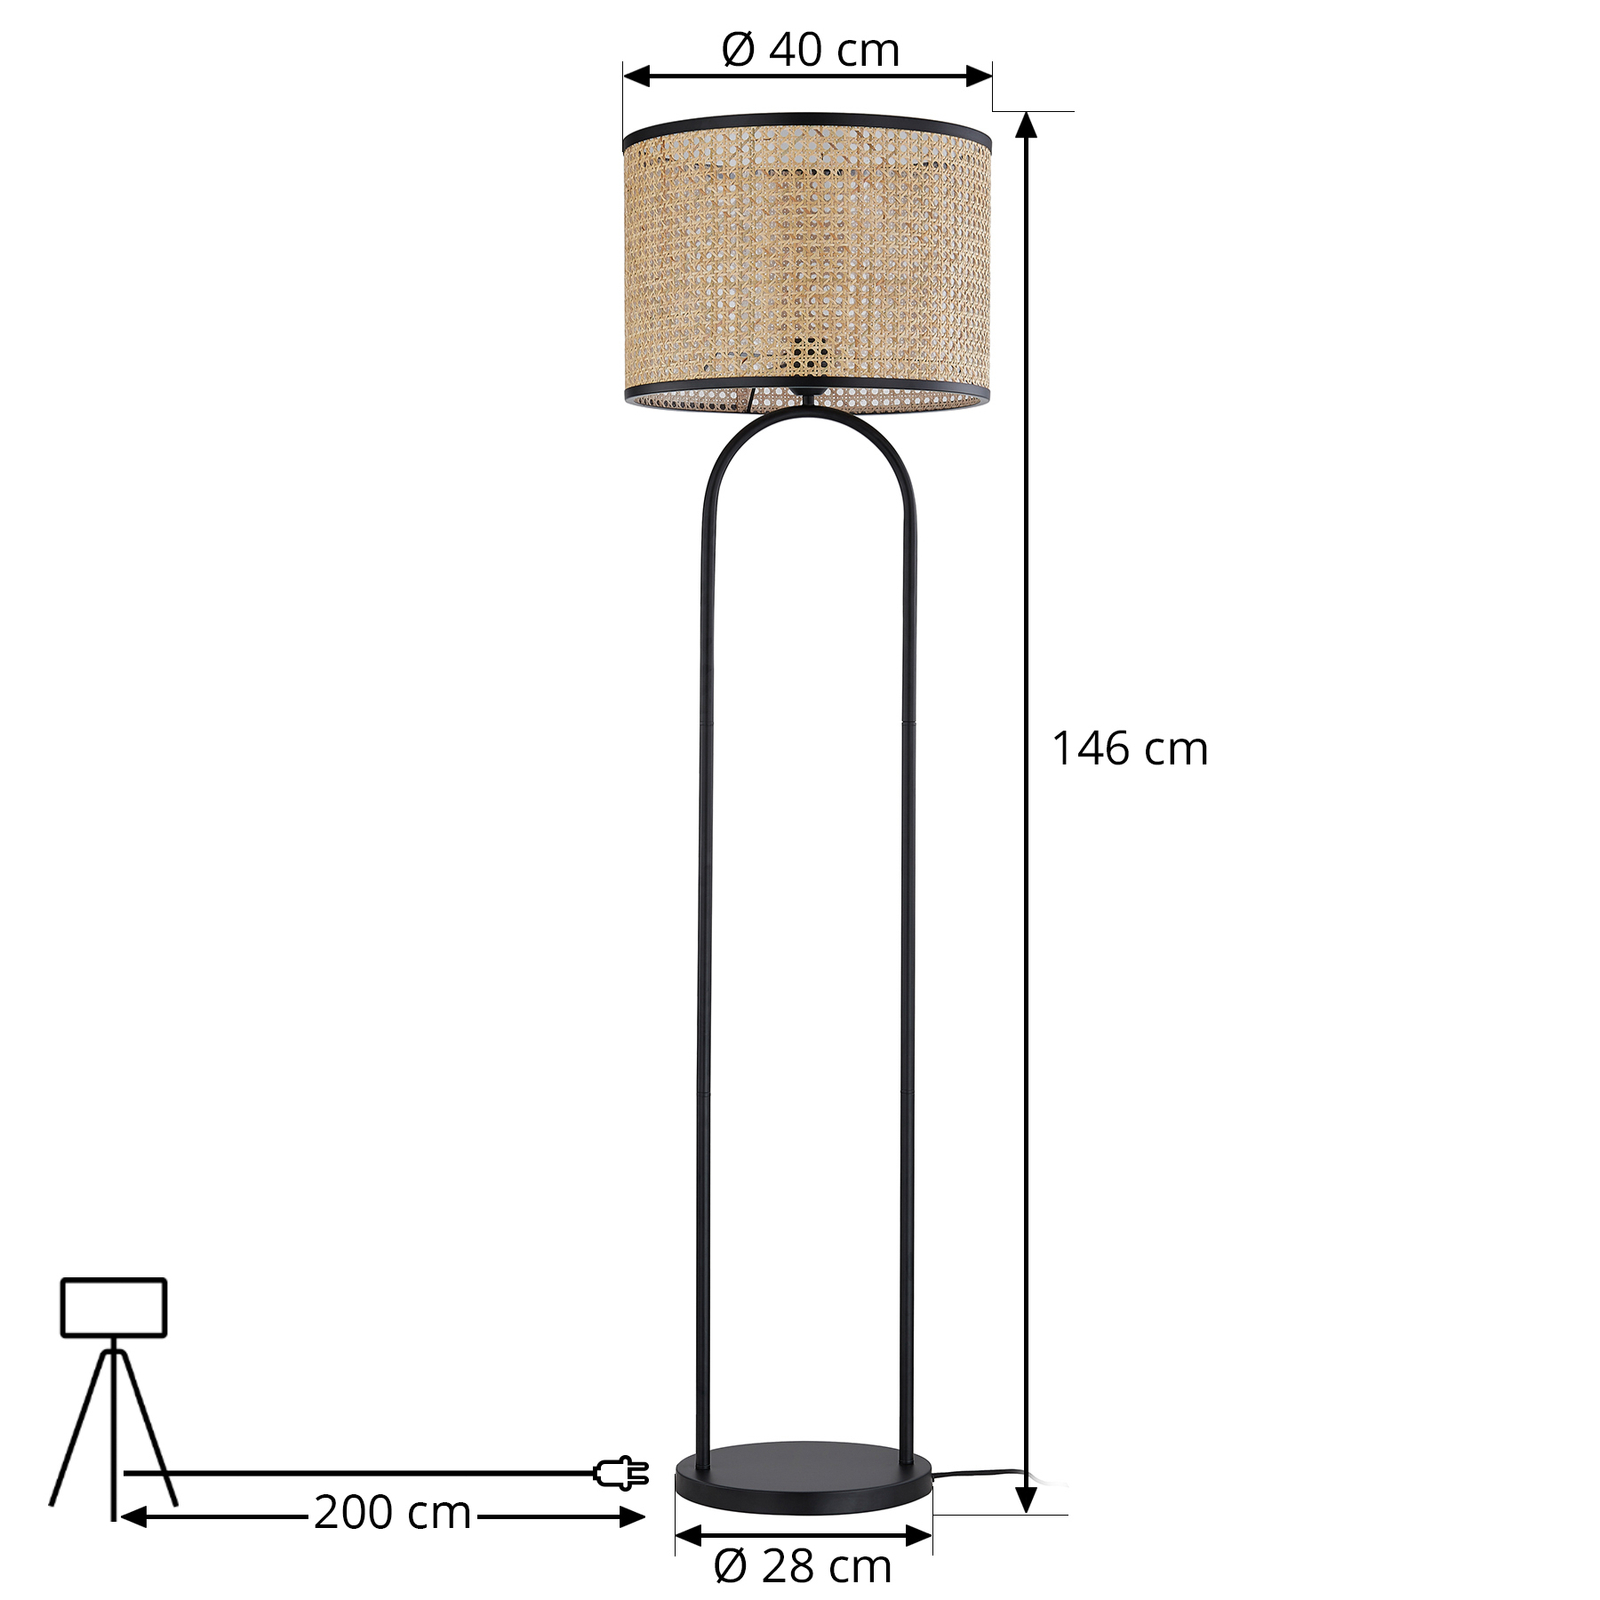 Lampa stojąca Lindby Yaelle, 146 cm wysokości, rattan, czarny, E27